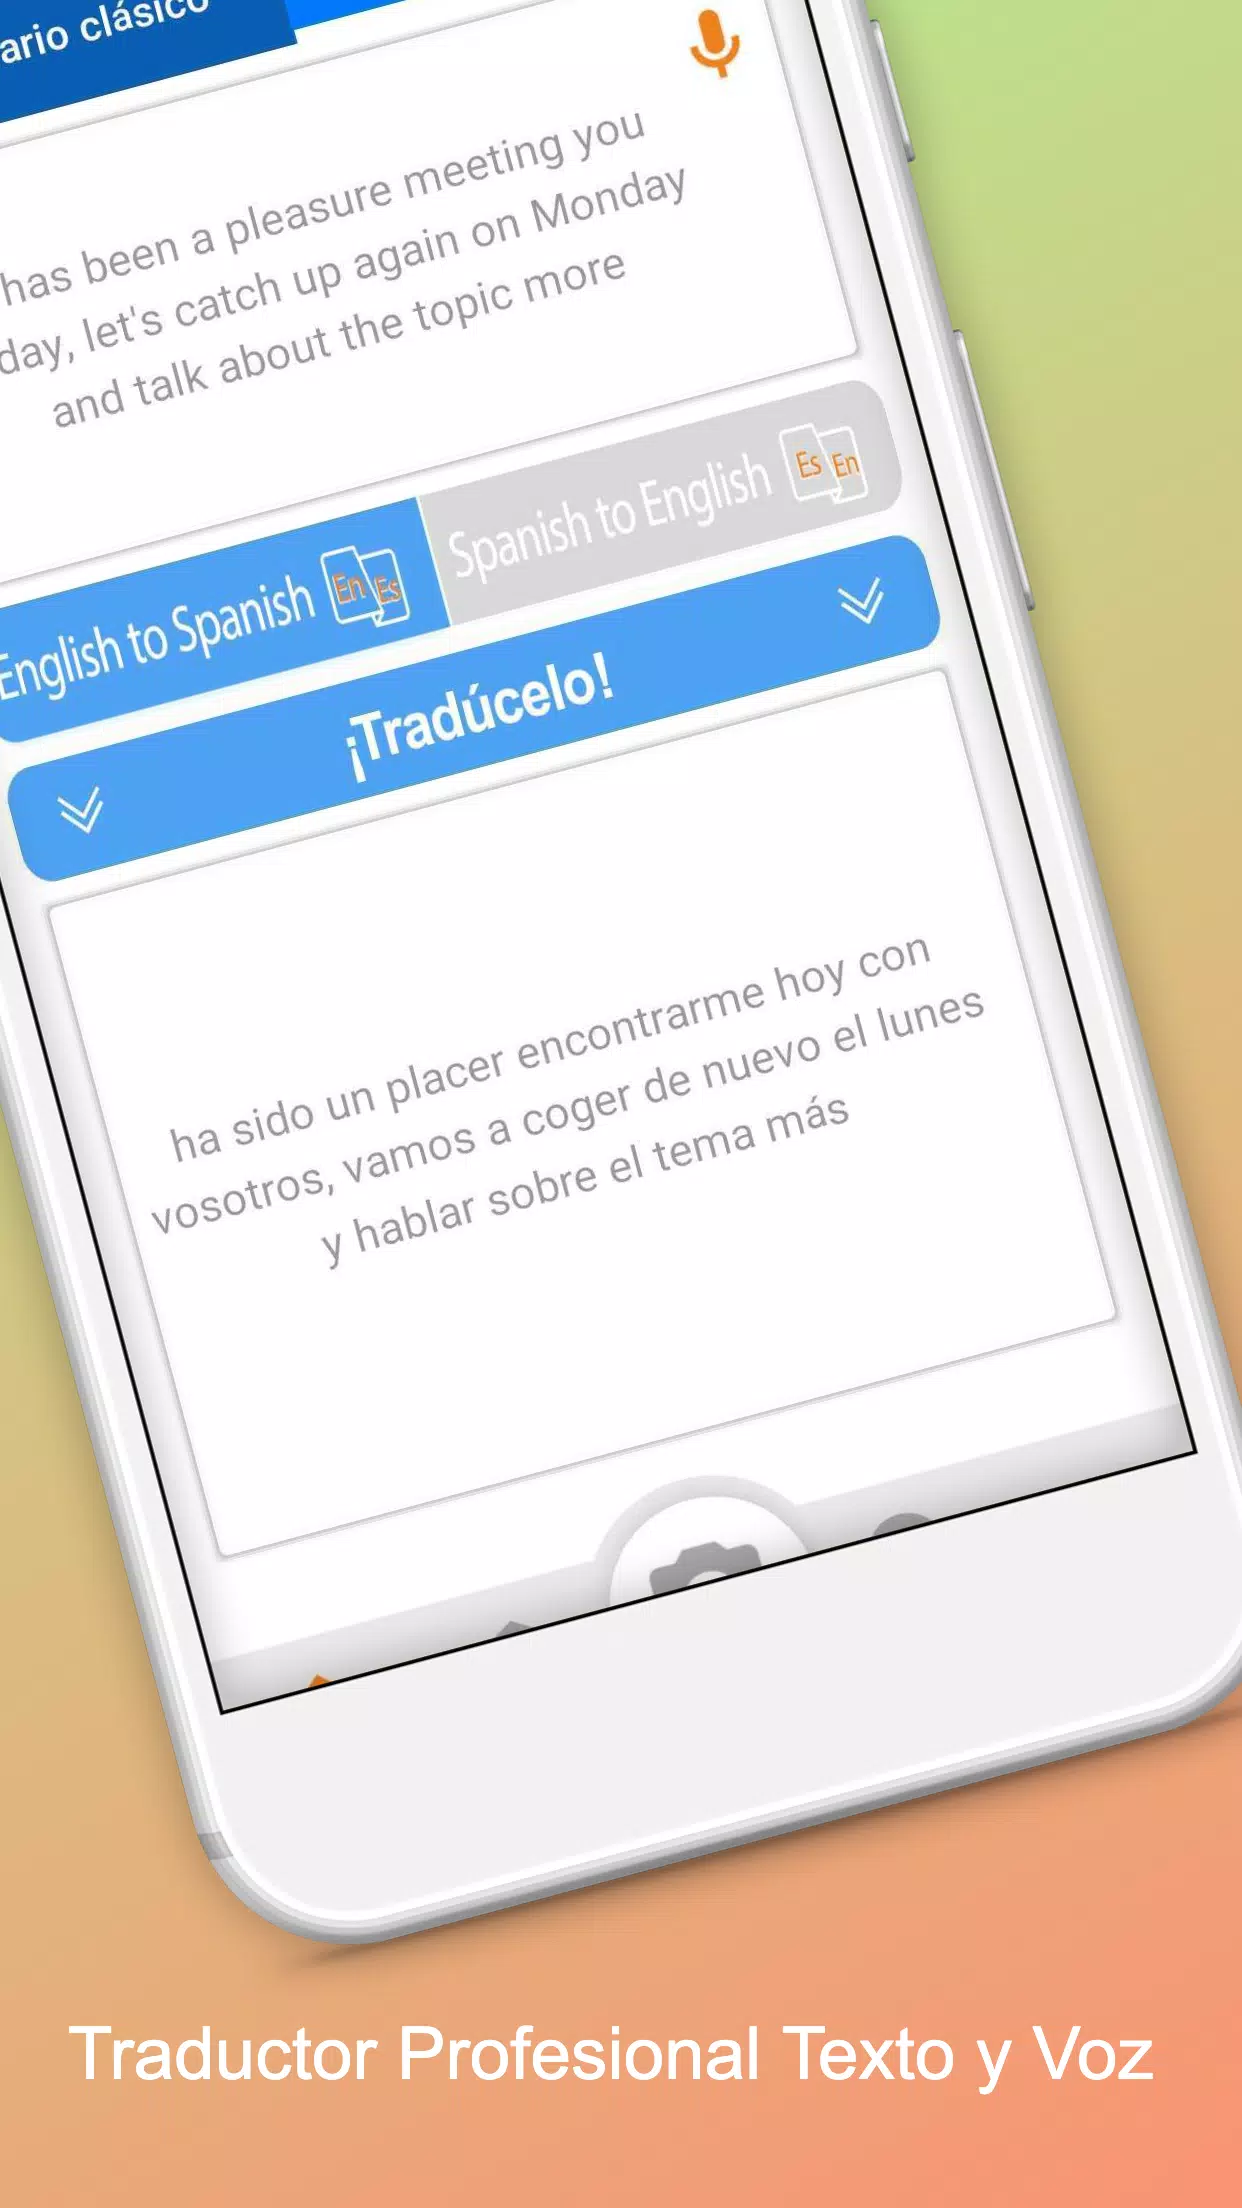 Traductor de Cámara en Vivo, Aprender Inglés fácil for Android - APK  Download